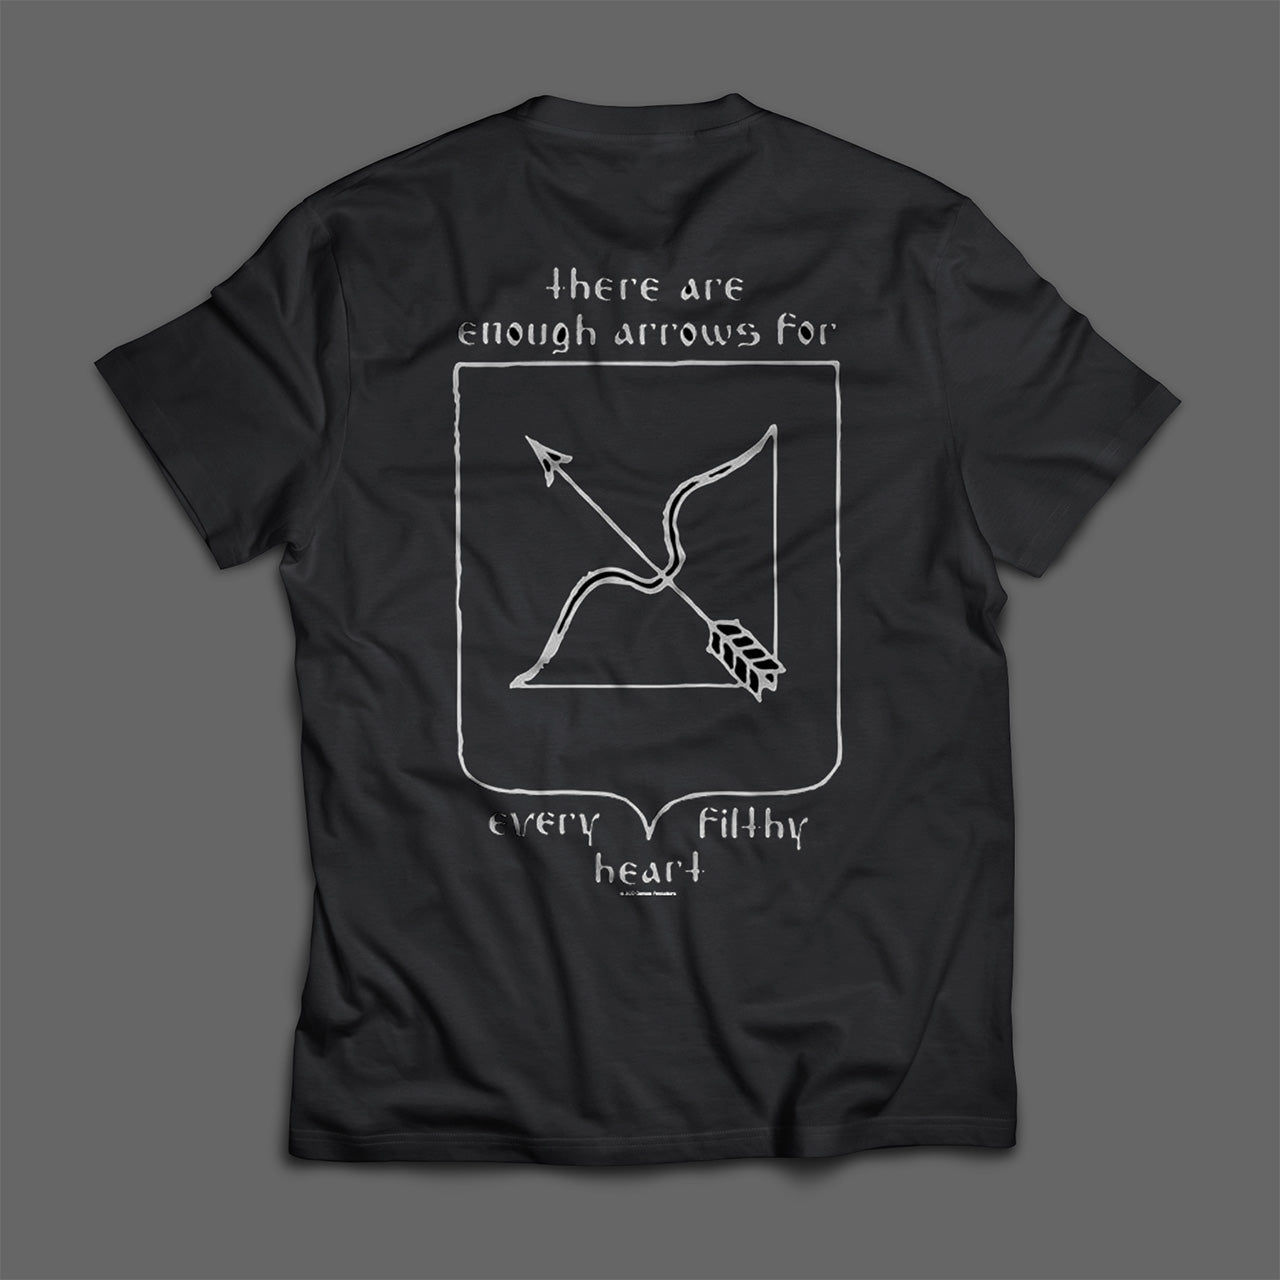 Hate Forest - Battlefields (T-Shirt)